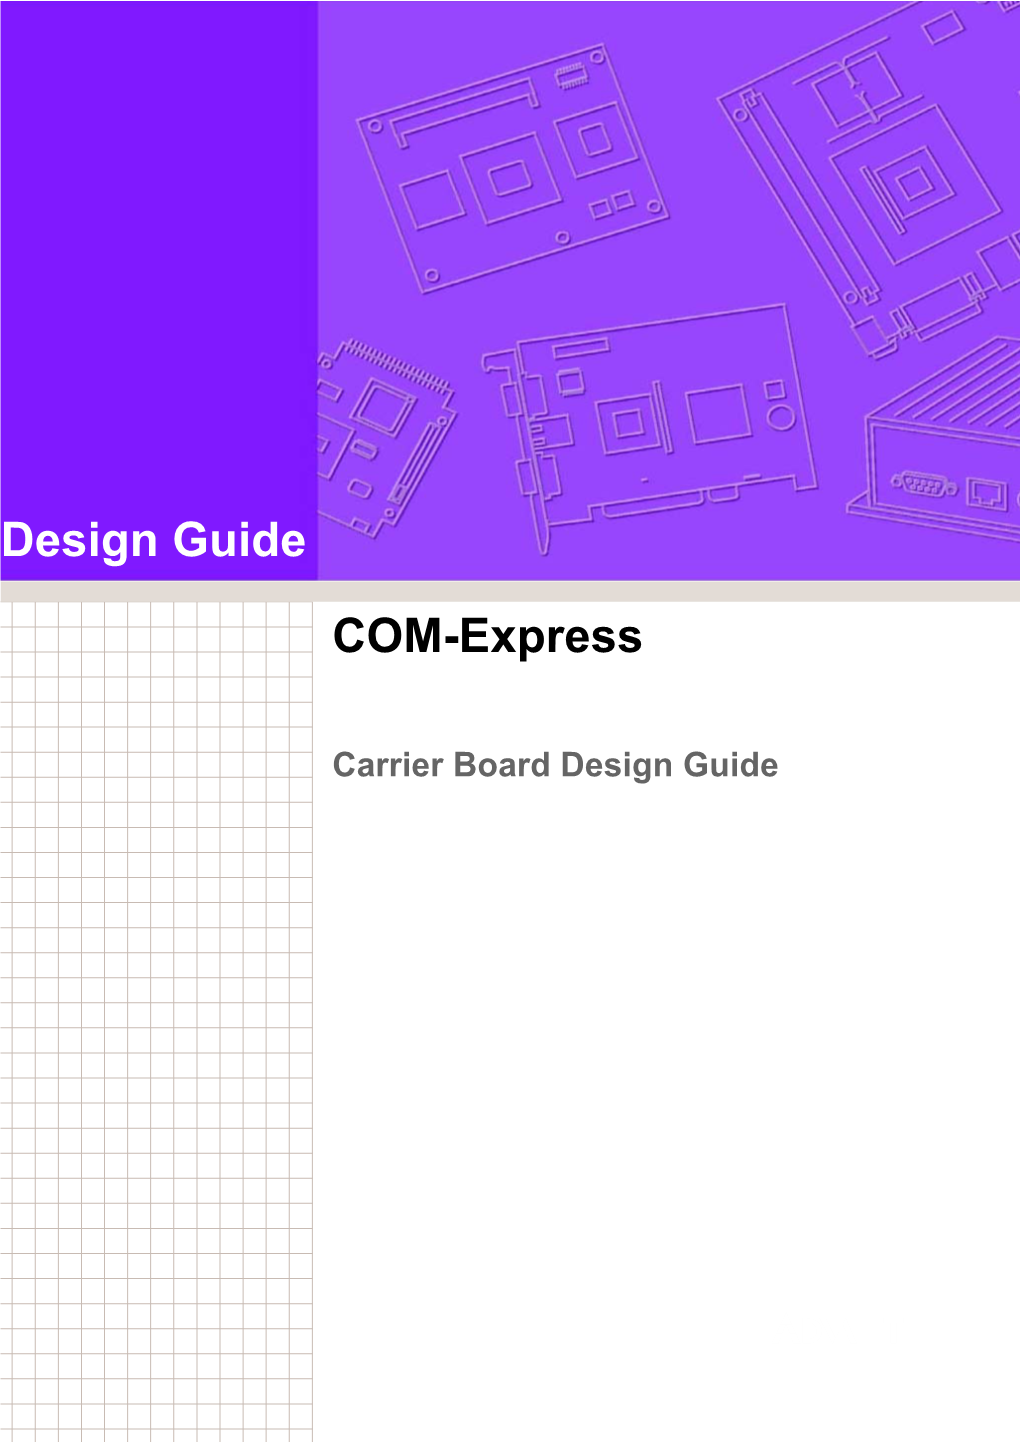 Design Guide COM-Express